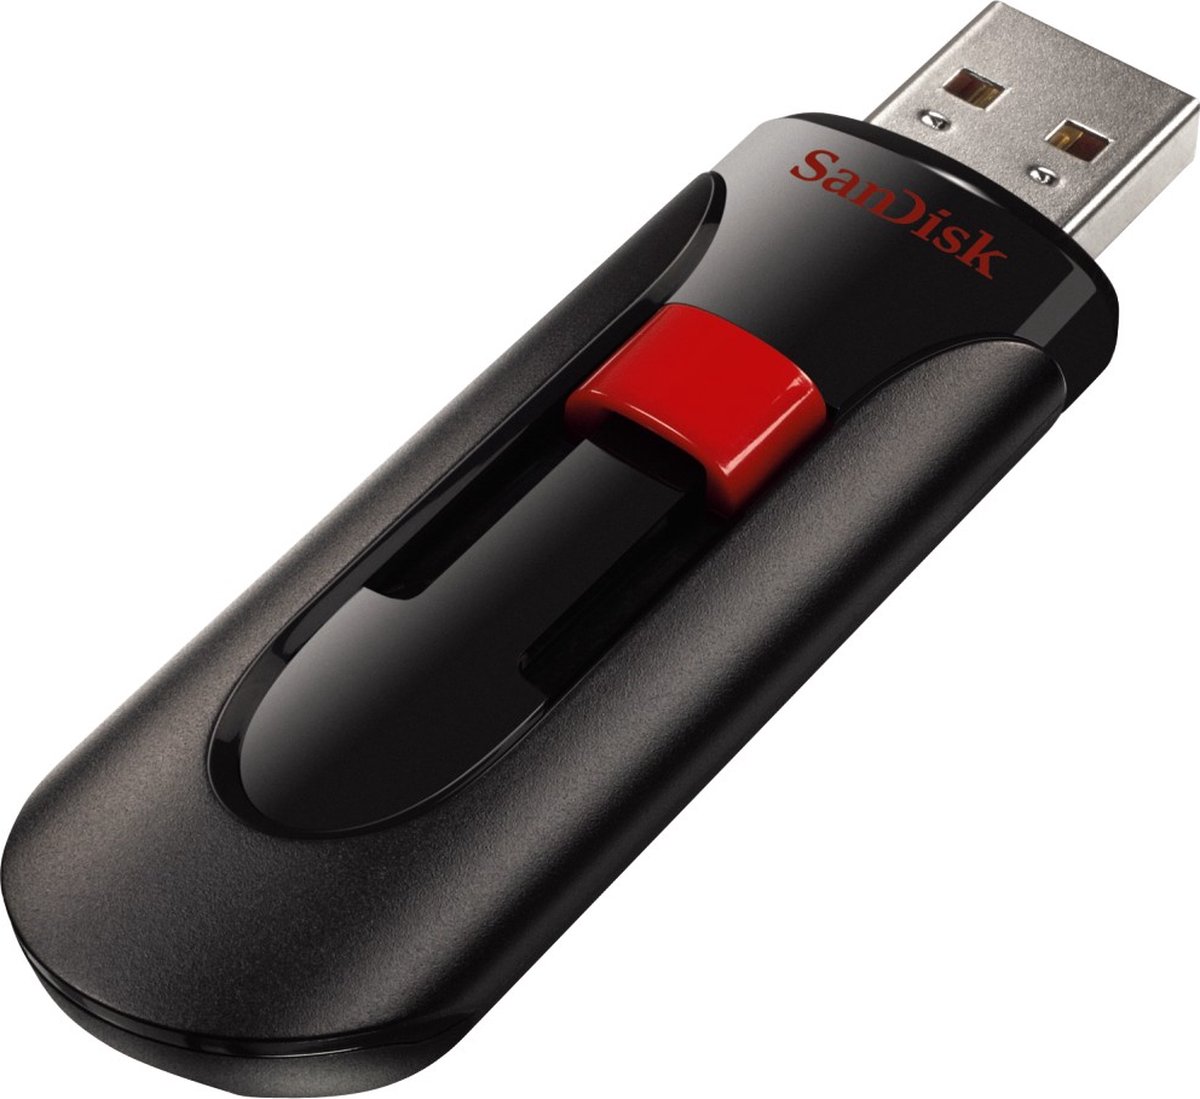 Cle USB 16Go sandisk - Produit neuf de bonne qualite